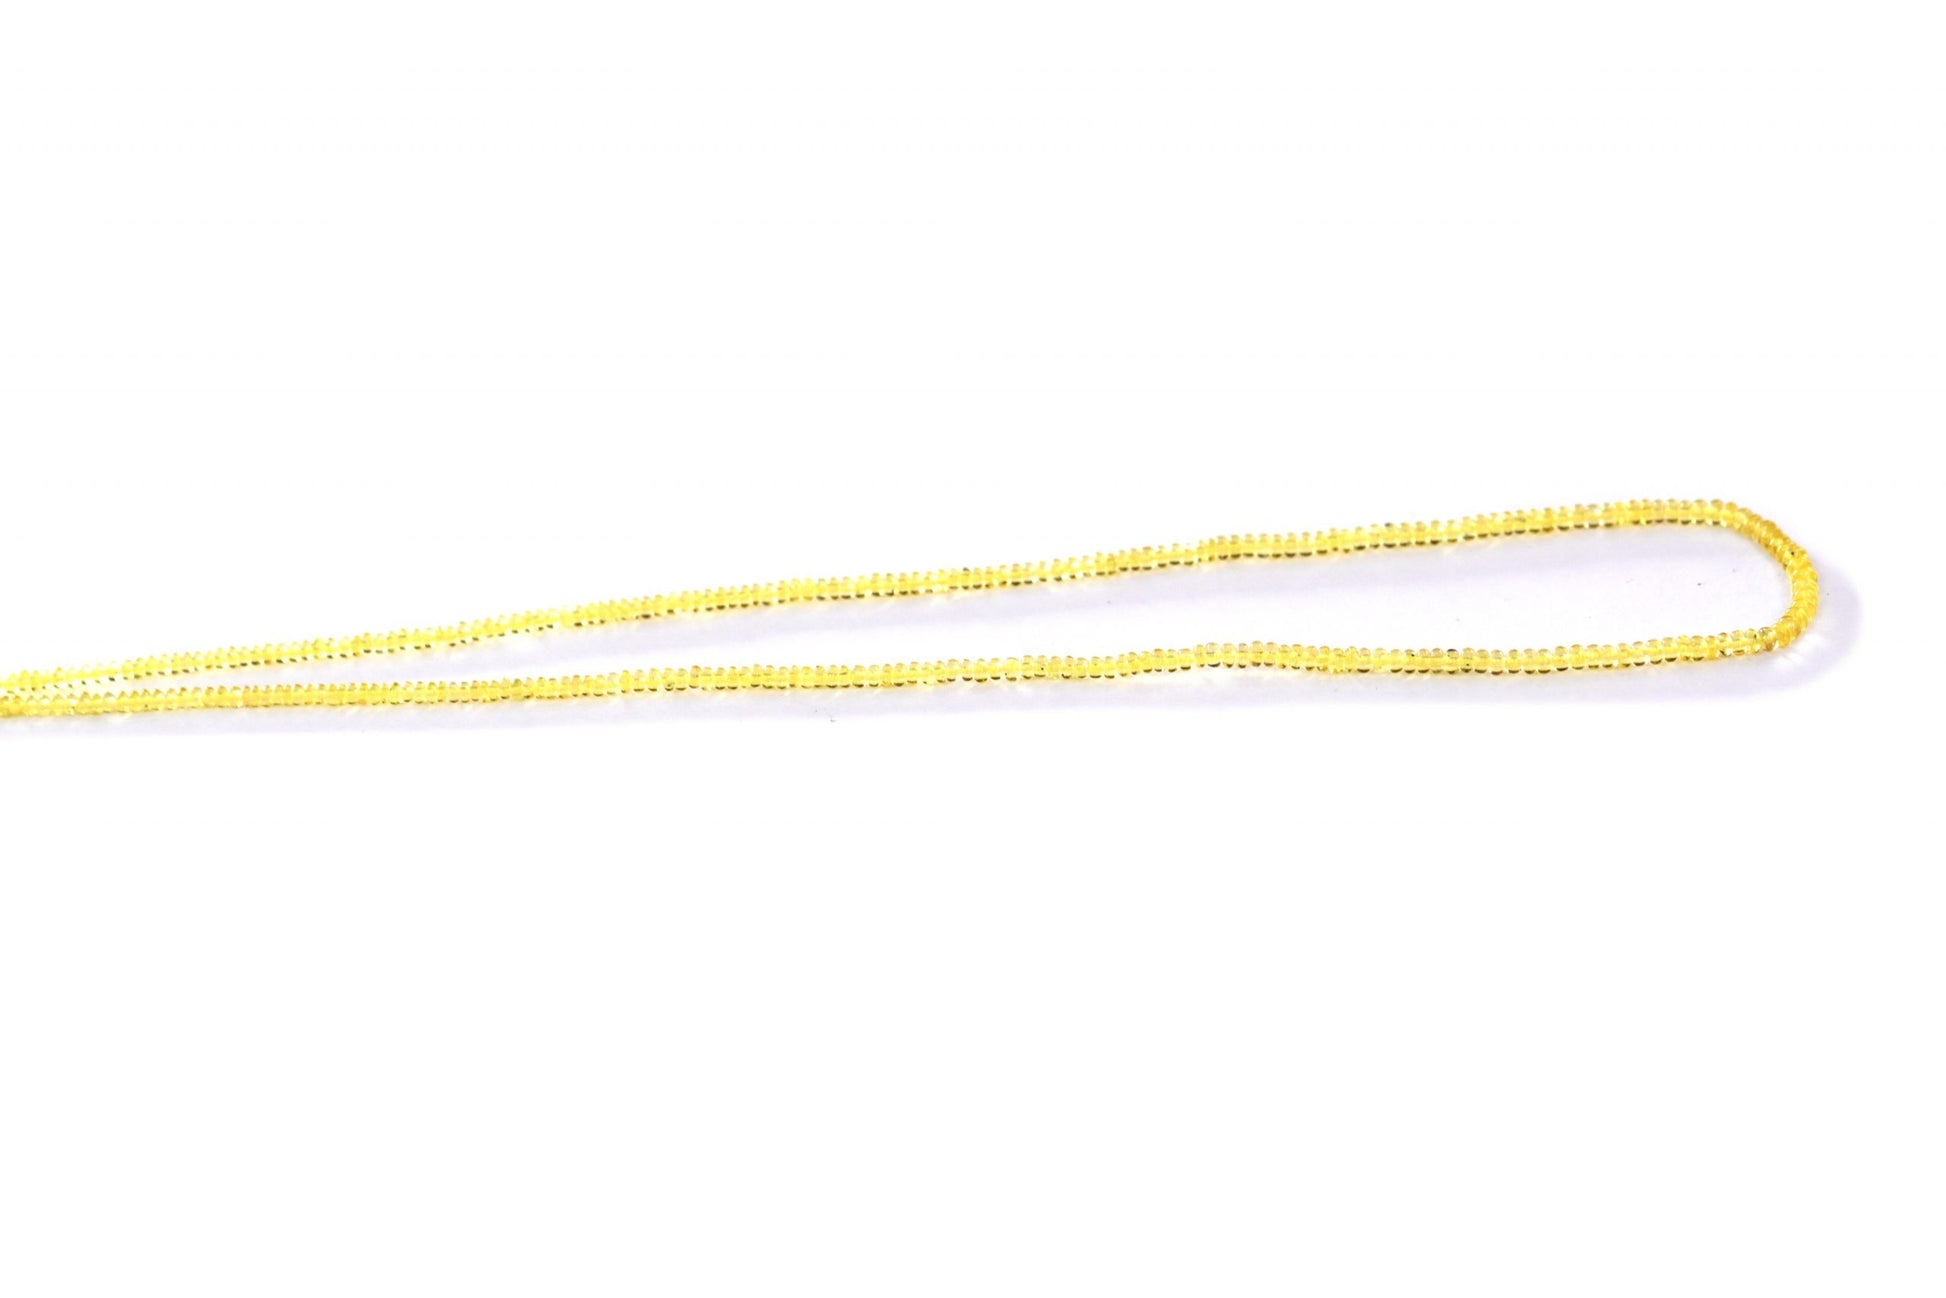 Yellow Sapphire Beads